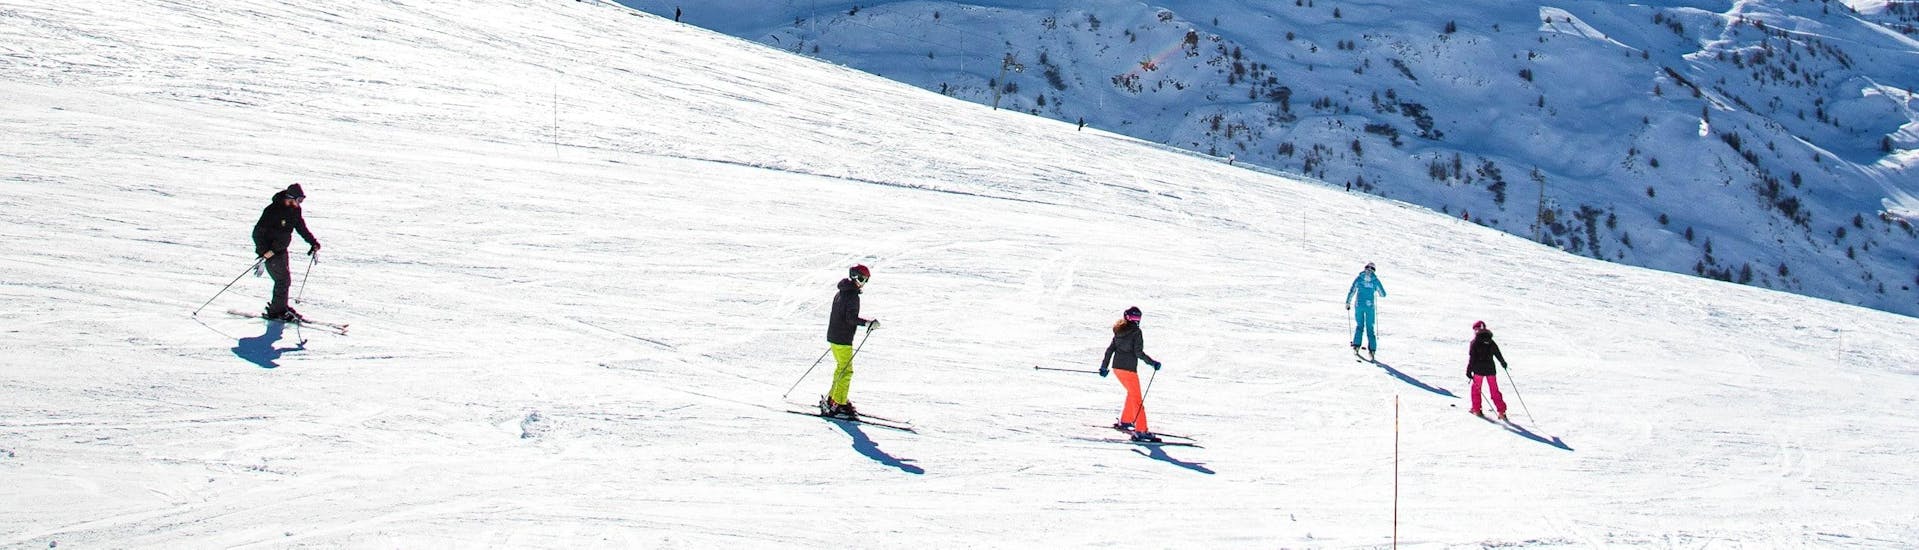 Skilessen voor volwassenen (vanaf 15 jaar) van Alle niveaus.